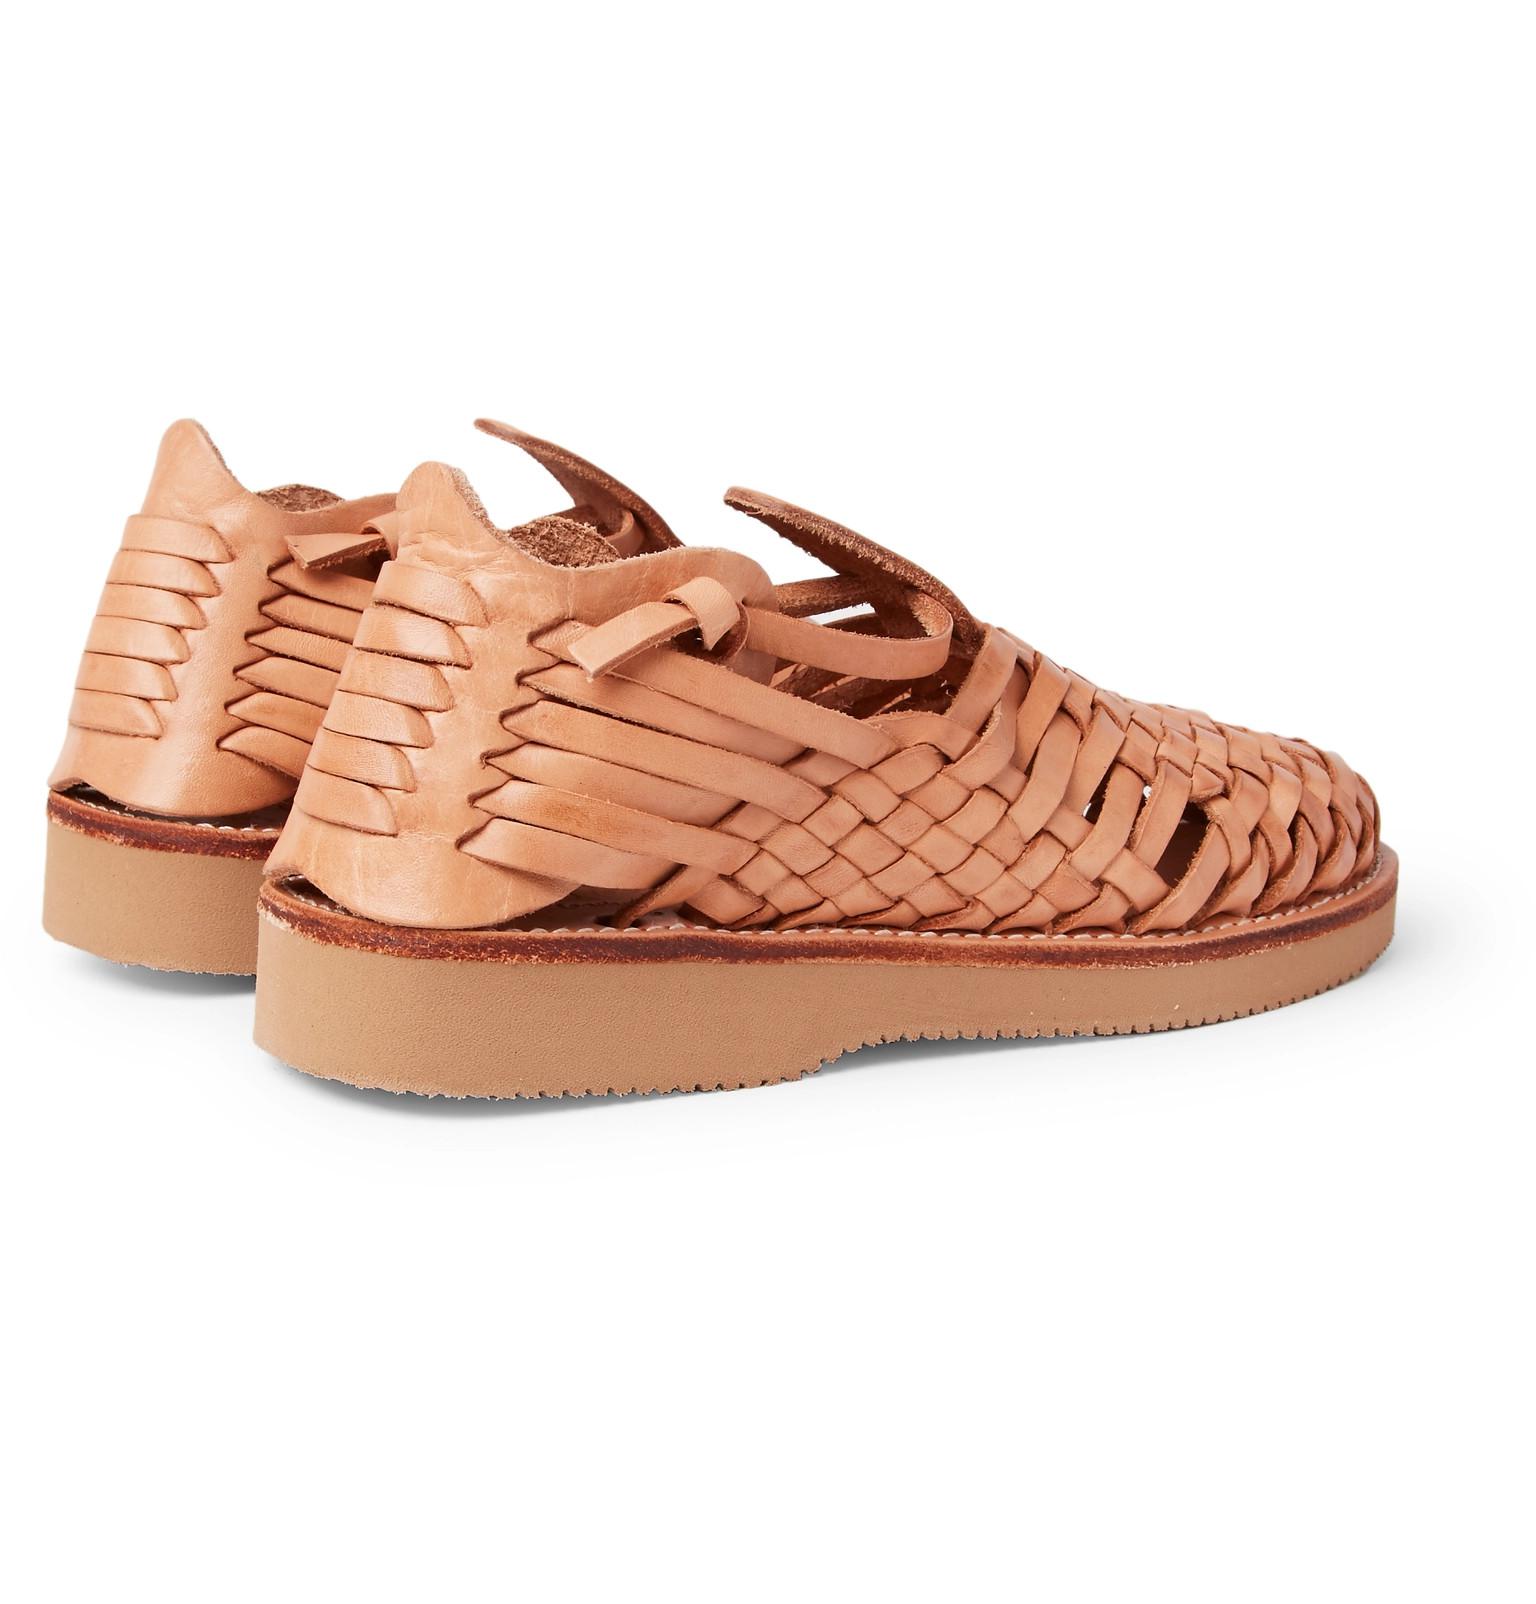 Yuketen Crus Woven Leather Sandals for Men - Lyst